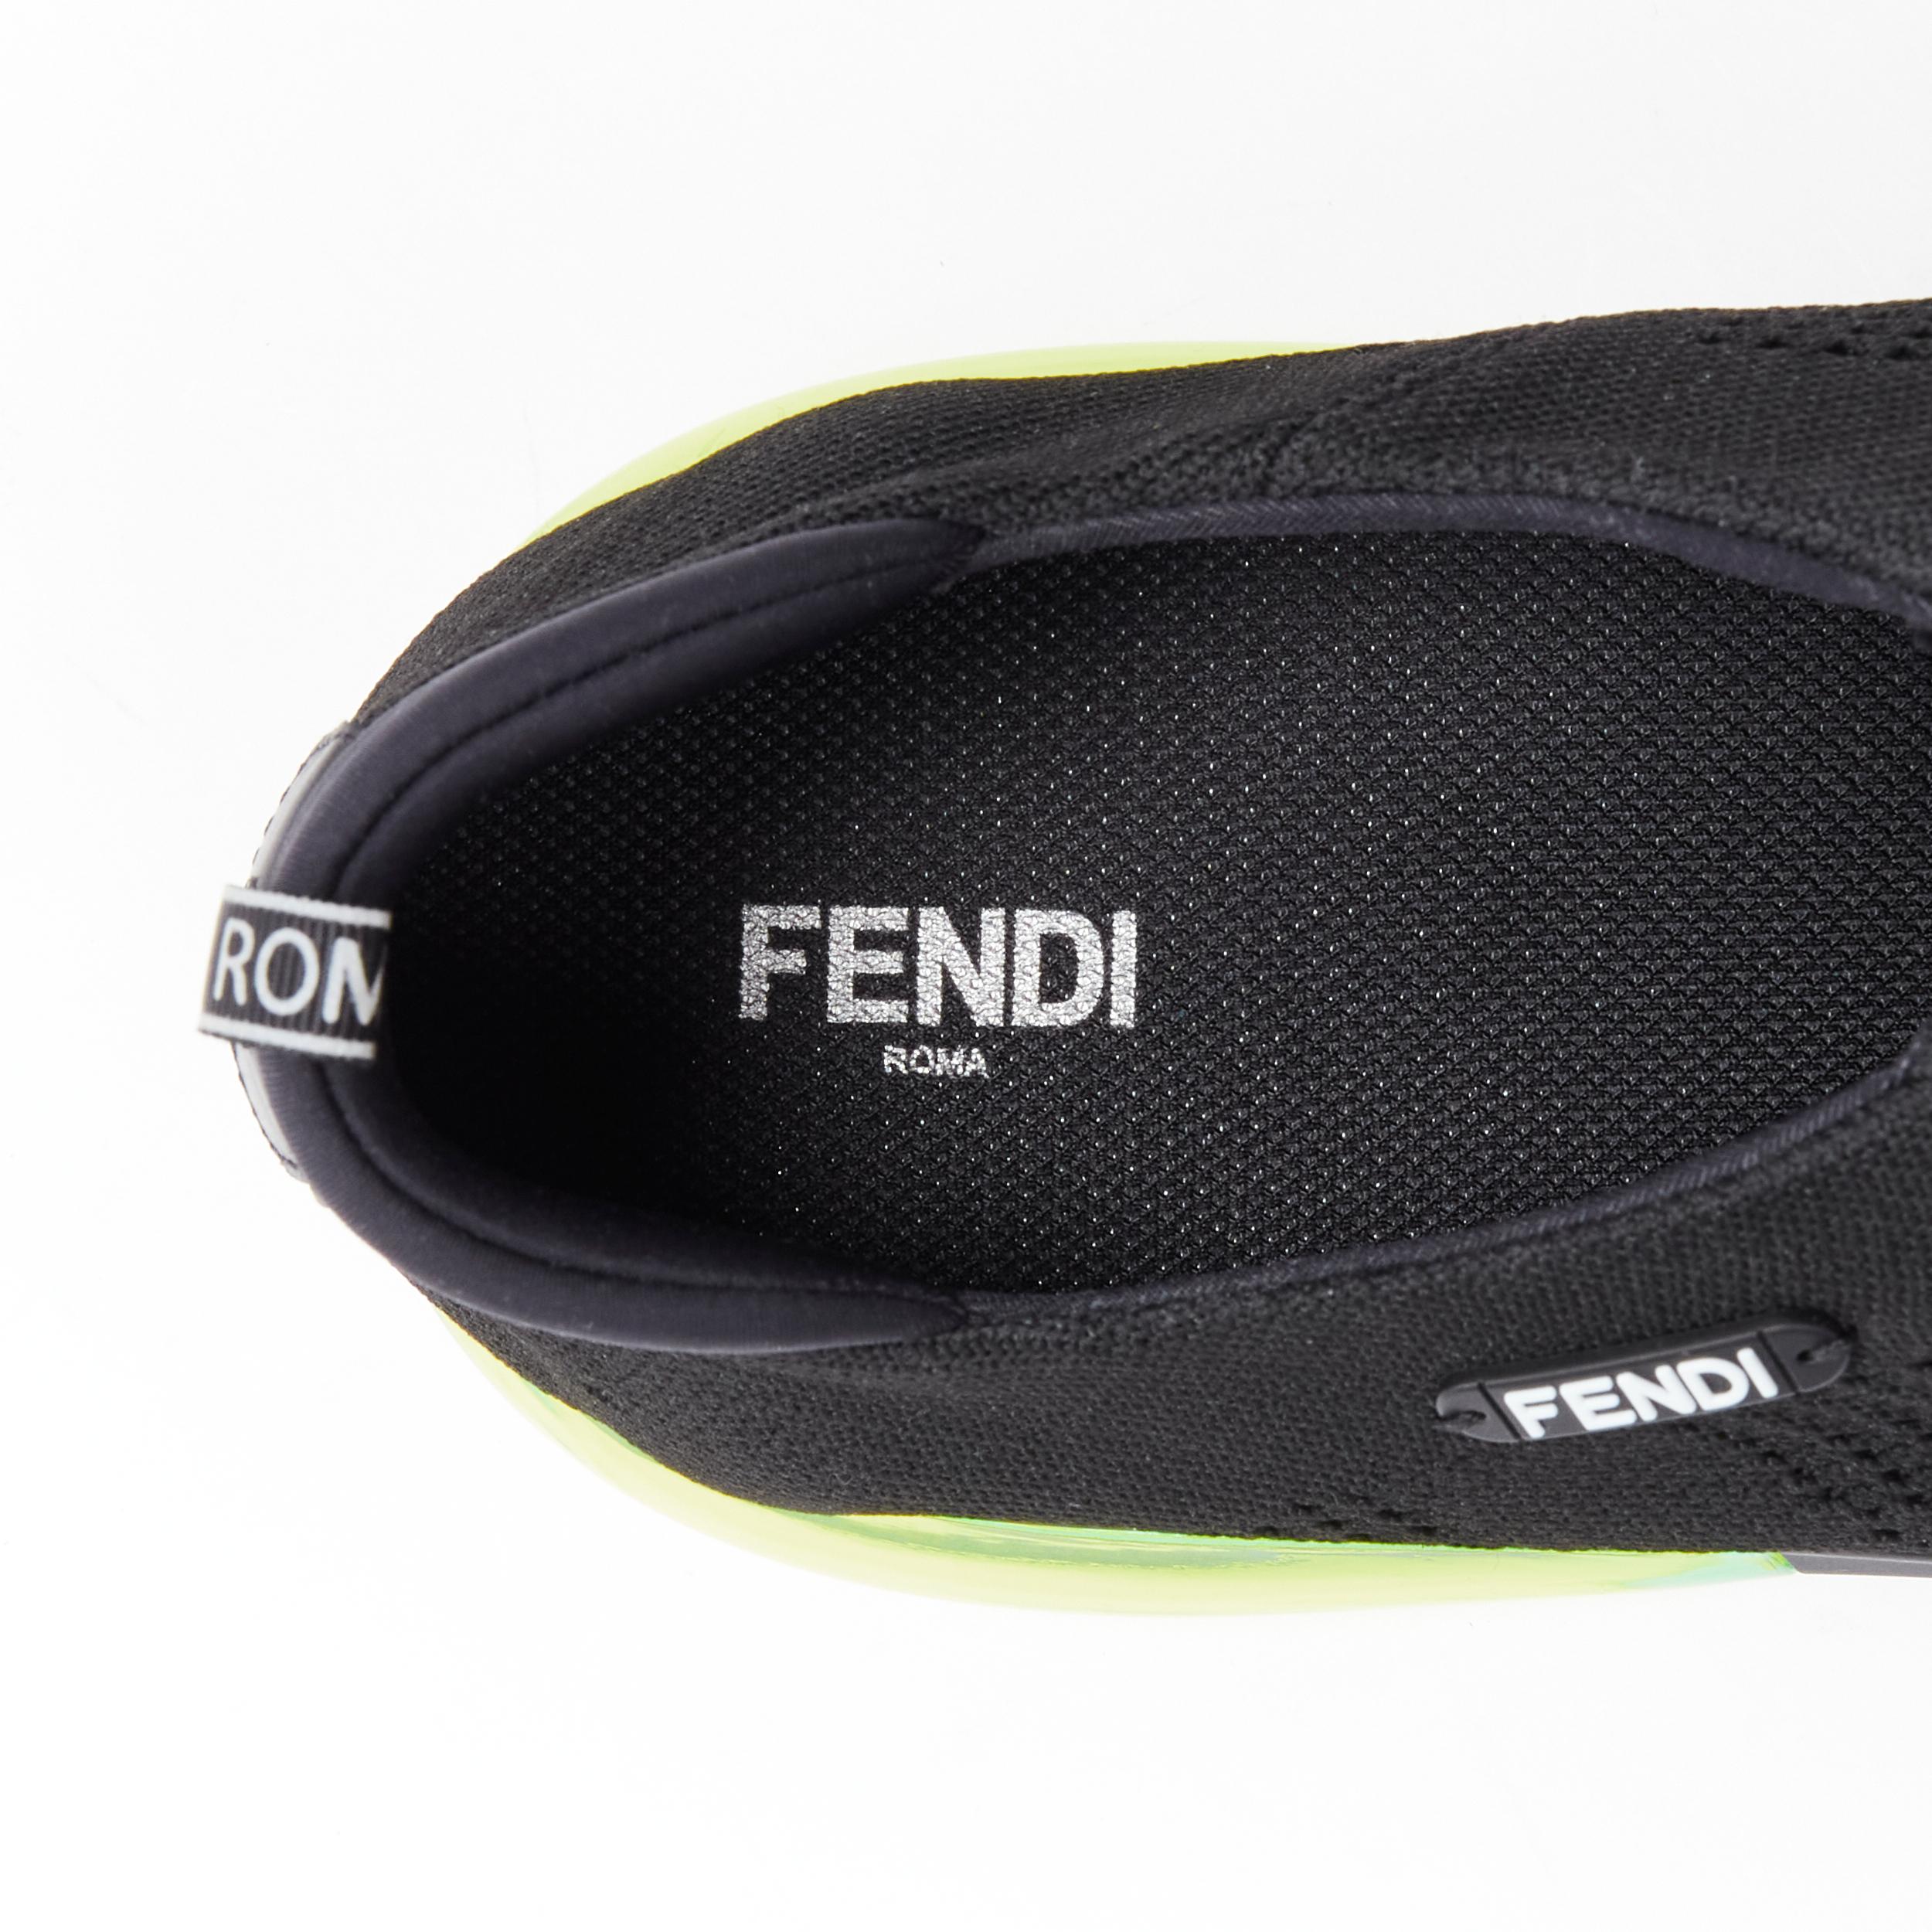 neu FENDI 2019 schwarz stricken neon gelb Luftsohle niedrigen Läufer Sneaker 7E1234 EU44 im Angebot 6